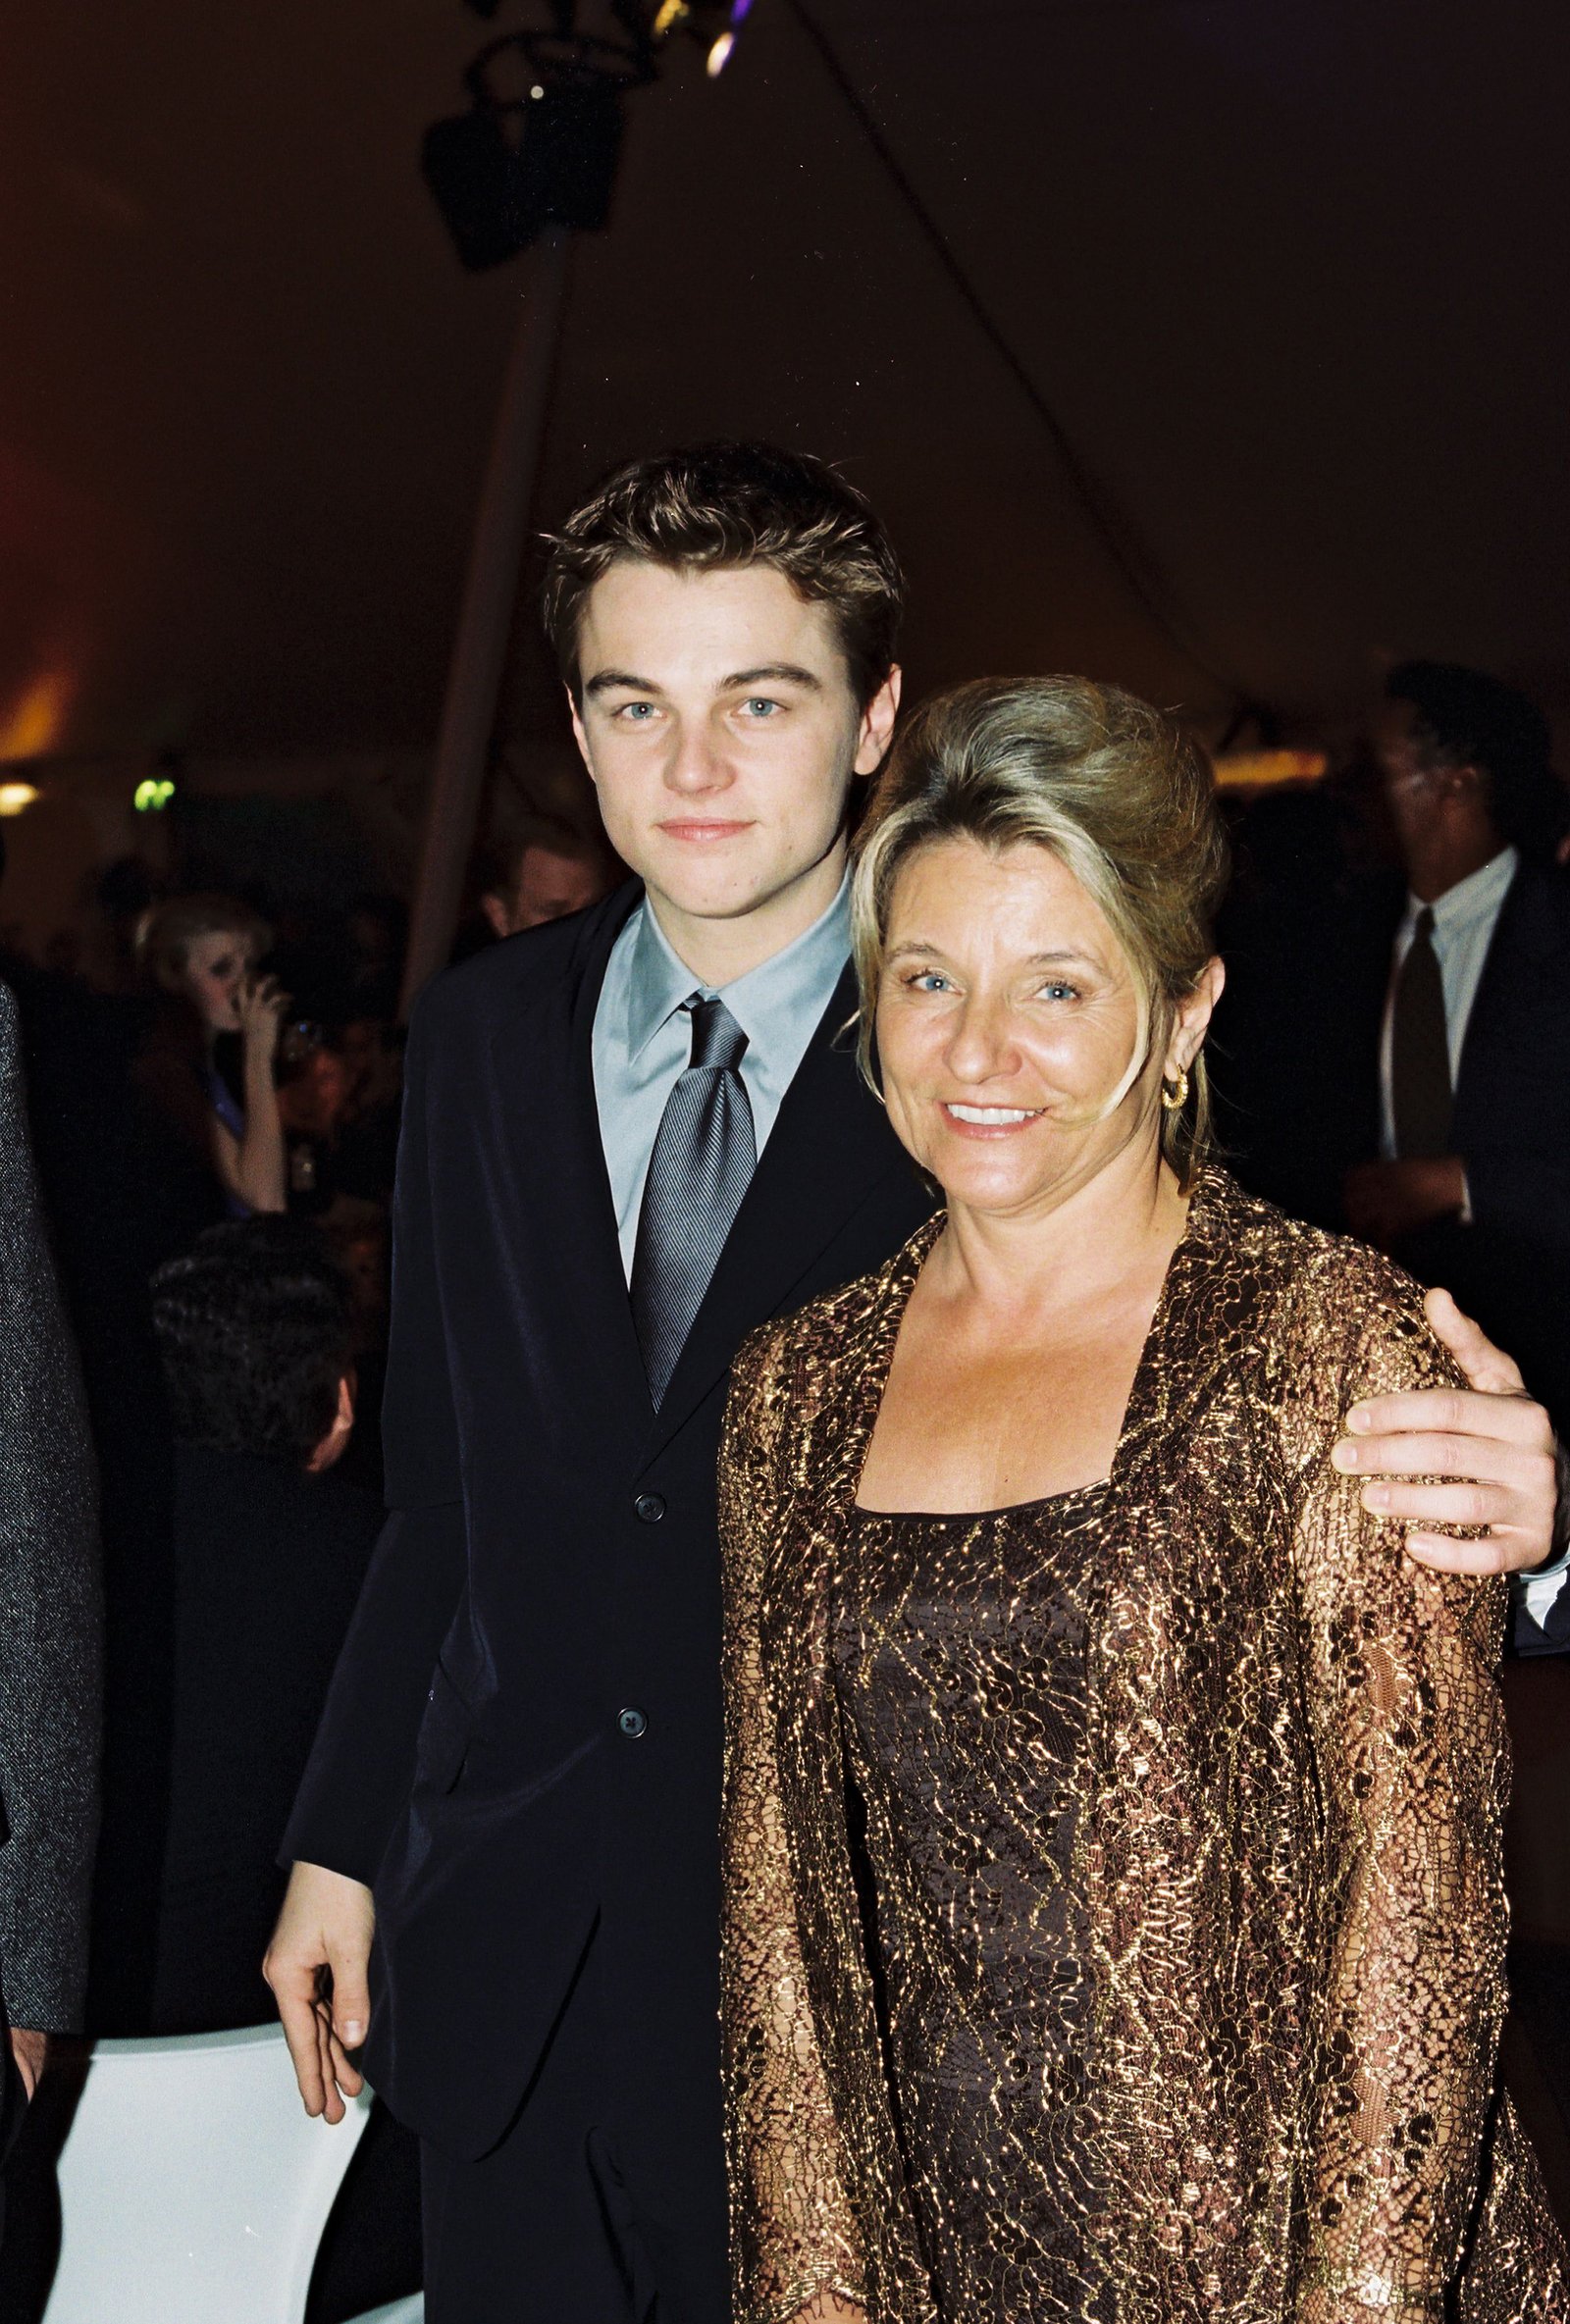 Leo memilih menggandeng sang ibu saat premiere TITANIC di tahun 1997 © peoplecom